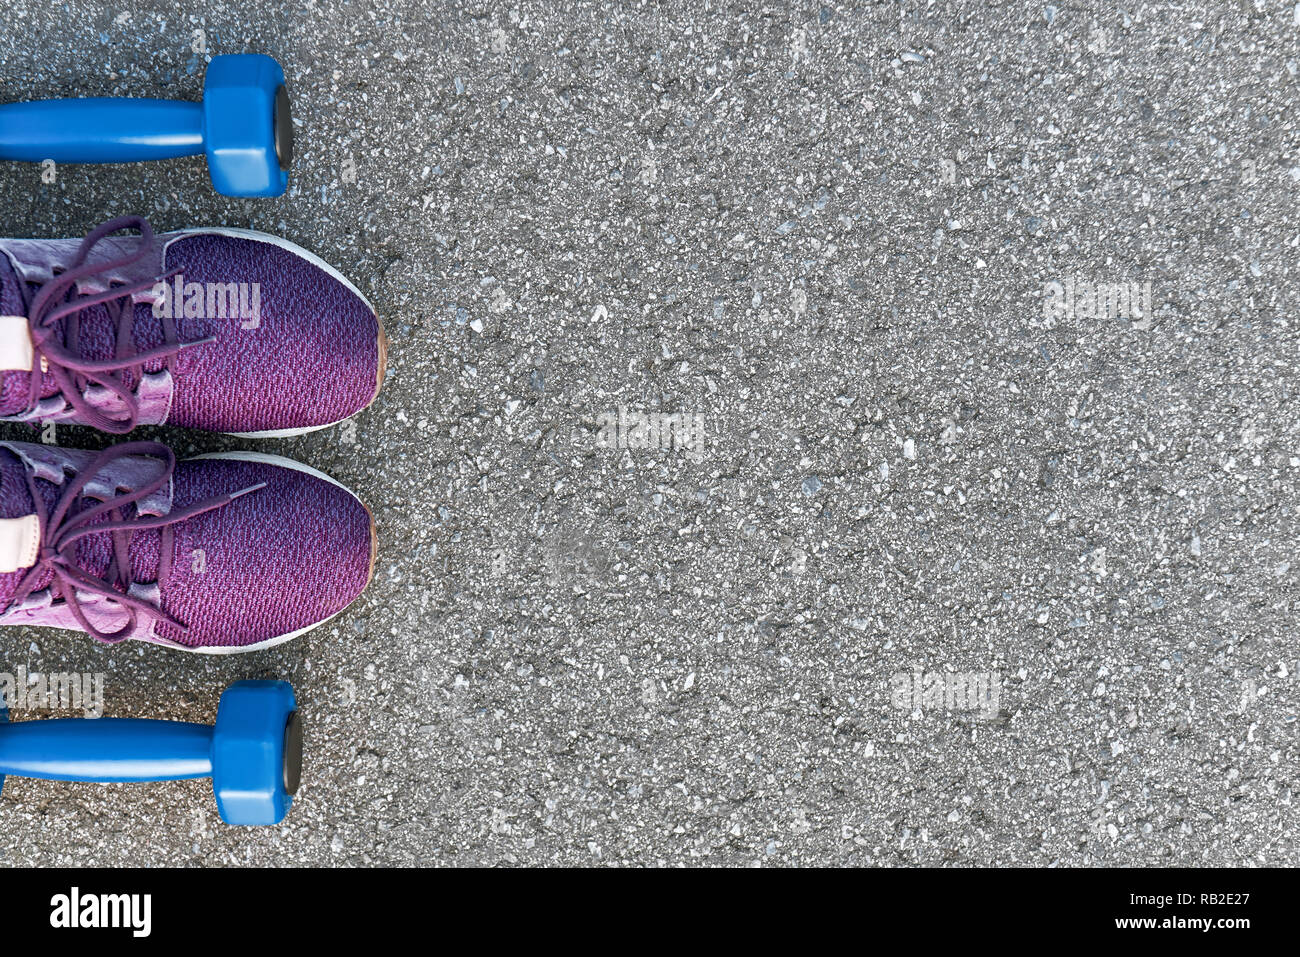 Bereit zum Training. Foto von dumpbells und lila Turnschuhe am Asphalt Hintergrund abgeschnitten. Sport motivation Stockfoto